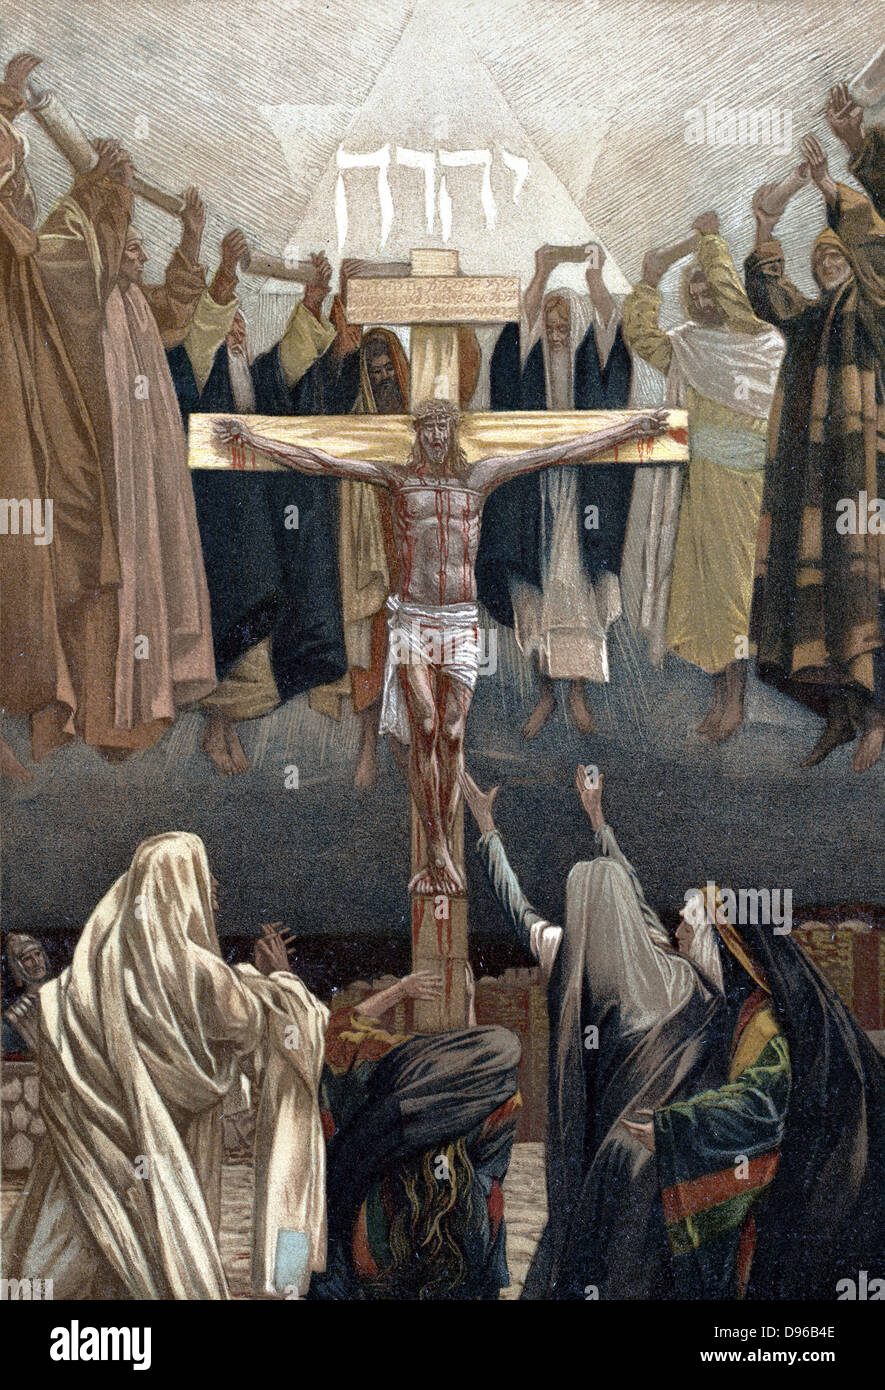 Es ist vollbracht: Die letzten Worte Christi am Kreuz. Abbildung von JJ Tissot für seine "Das Leben unseres Erlösers Jesus Christus' London c 1890. Oleograph. Stockfoto